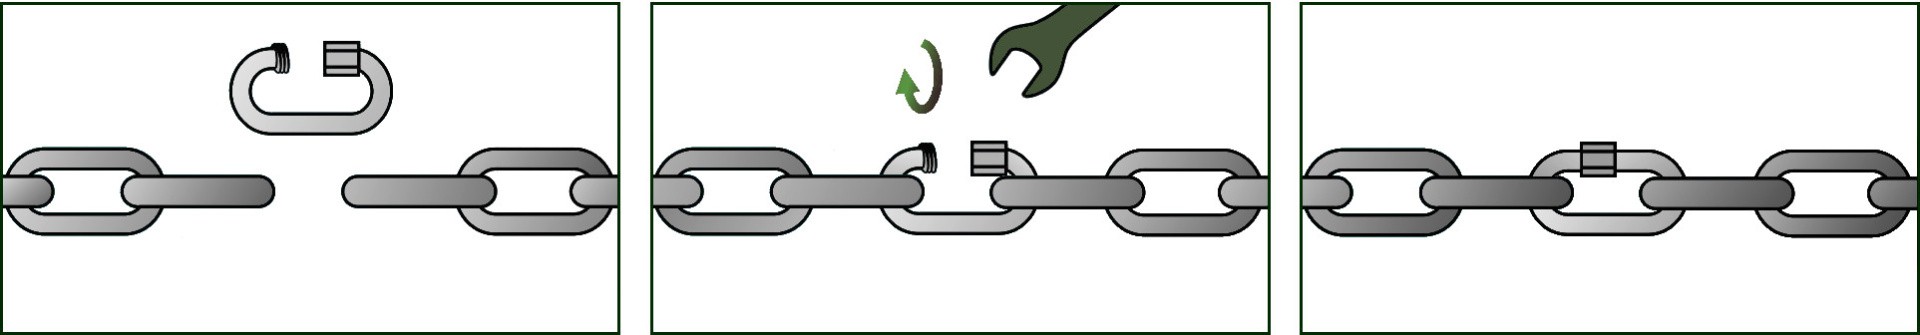 монтаж удлинённого винтового карабина на длиннозвенную цепь